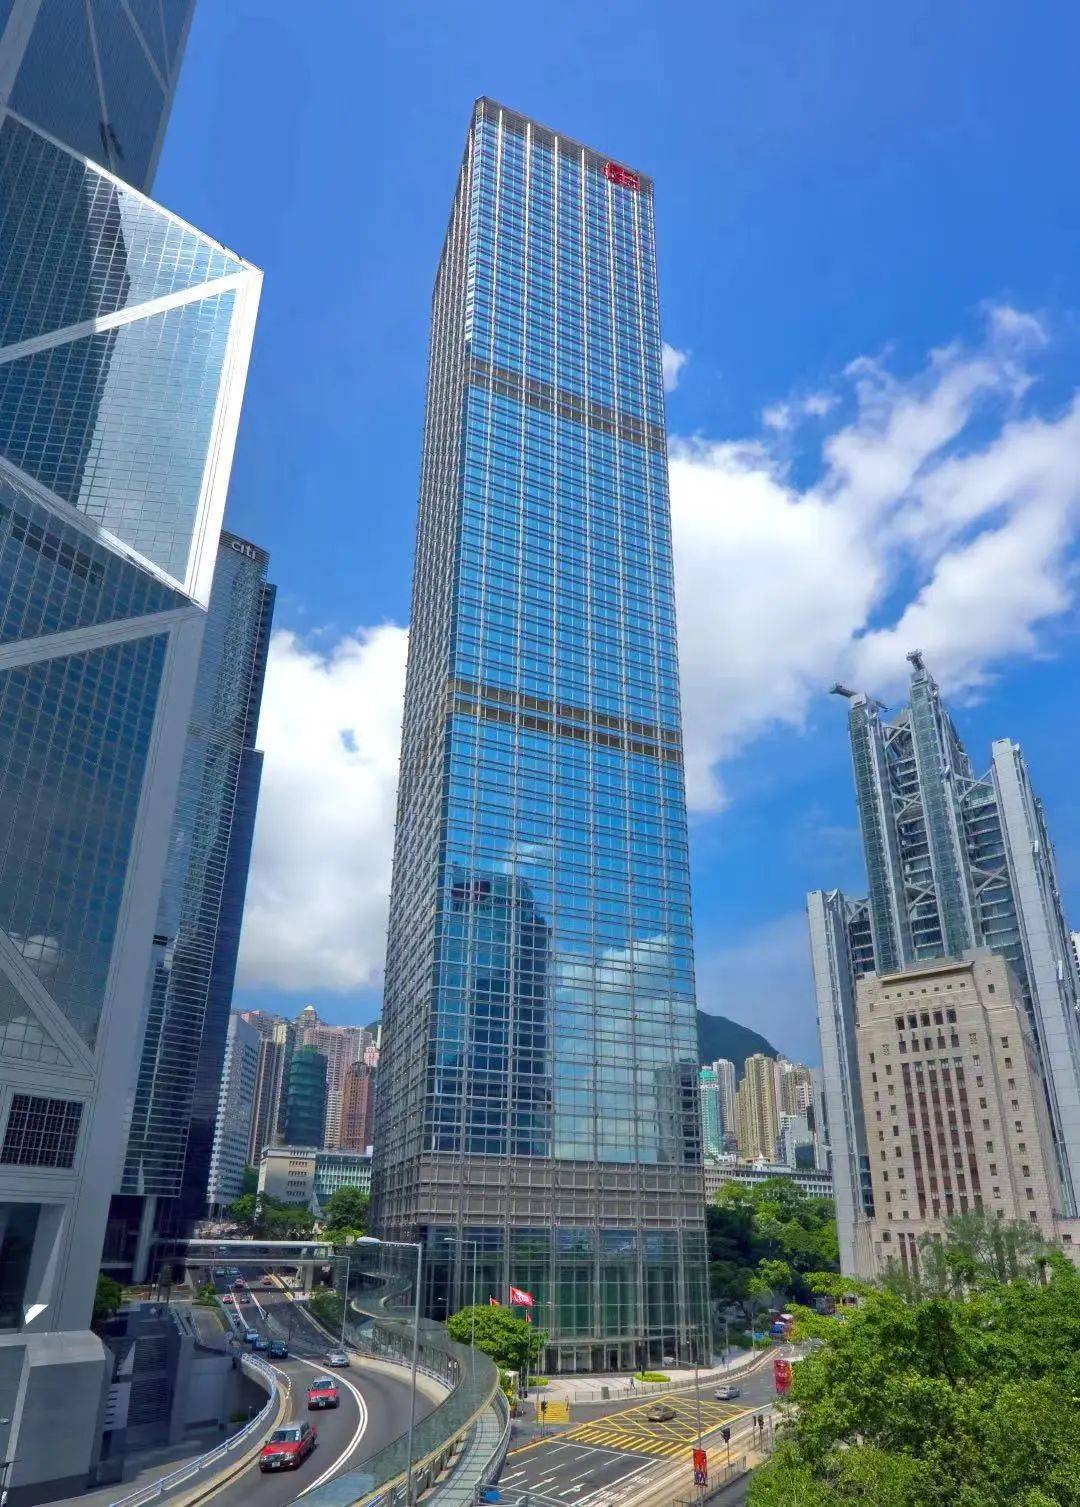 长江实业集团有限公司为具领导地位的跨国企业,集团于香港市场具标杆